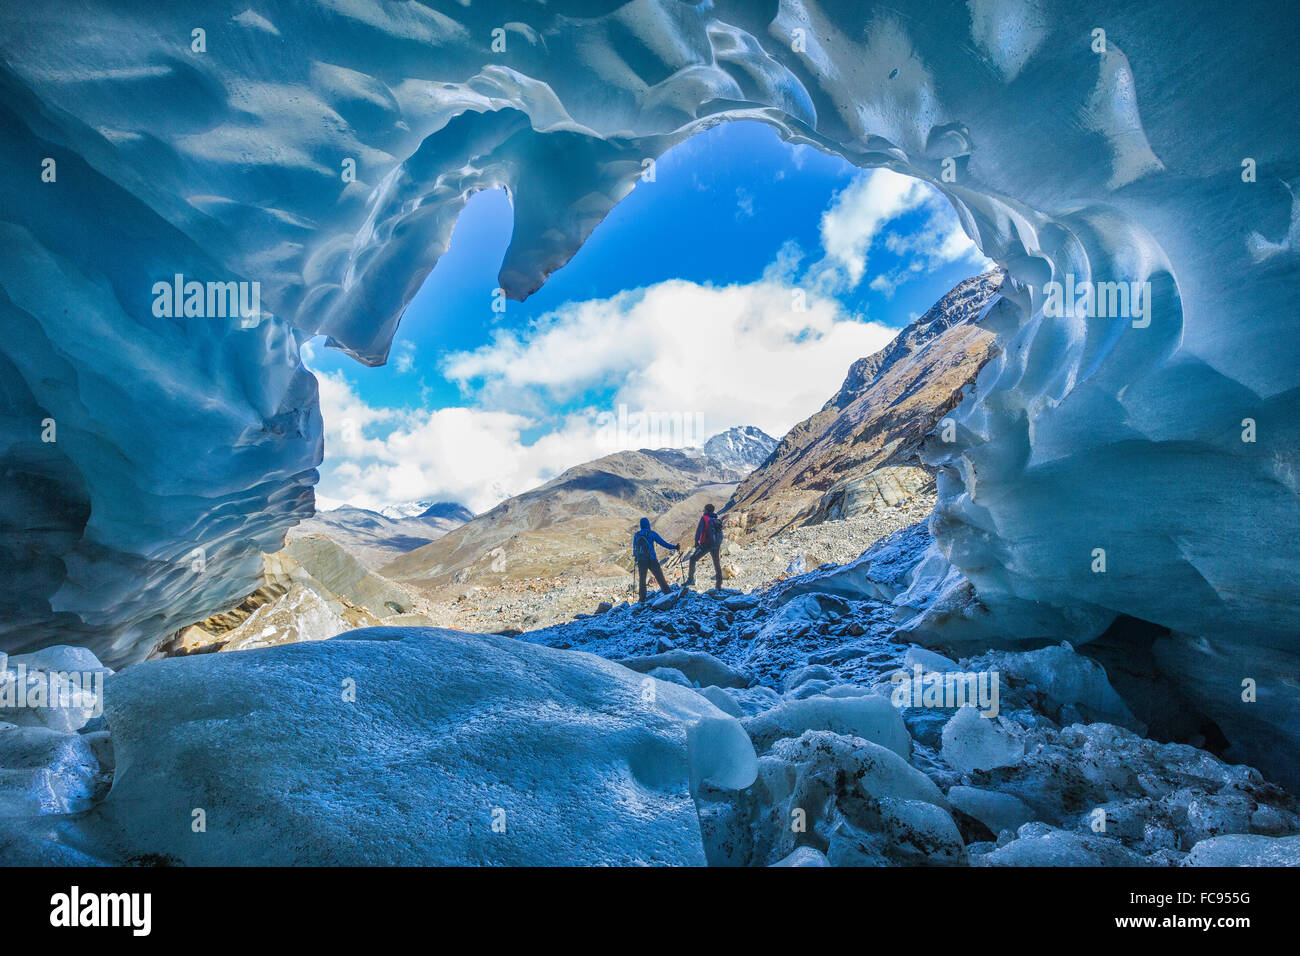 Gli escursionisti all'interno del ghiacciaio dei Forni, Valle dei Forni, Parco Nazionale dello Stelvio, la Valtellina, Lombardia, Italia, Europa Foto Stock